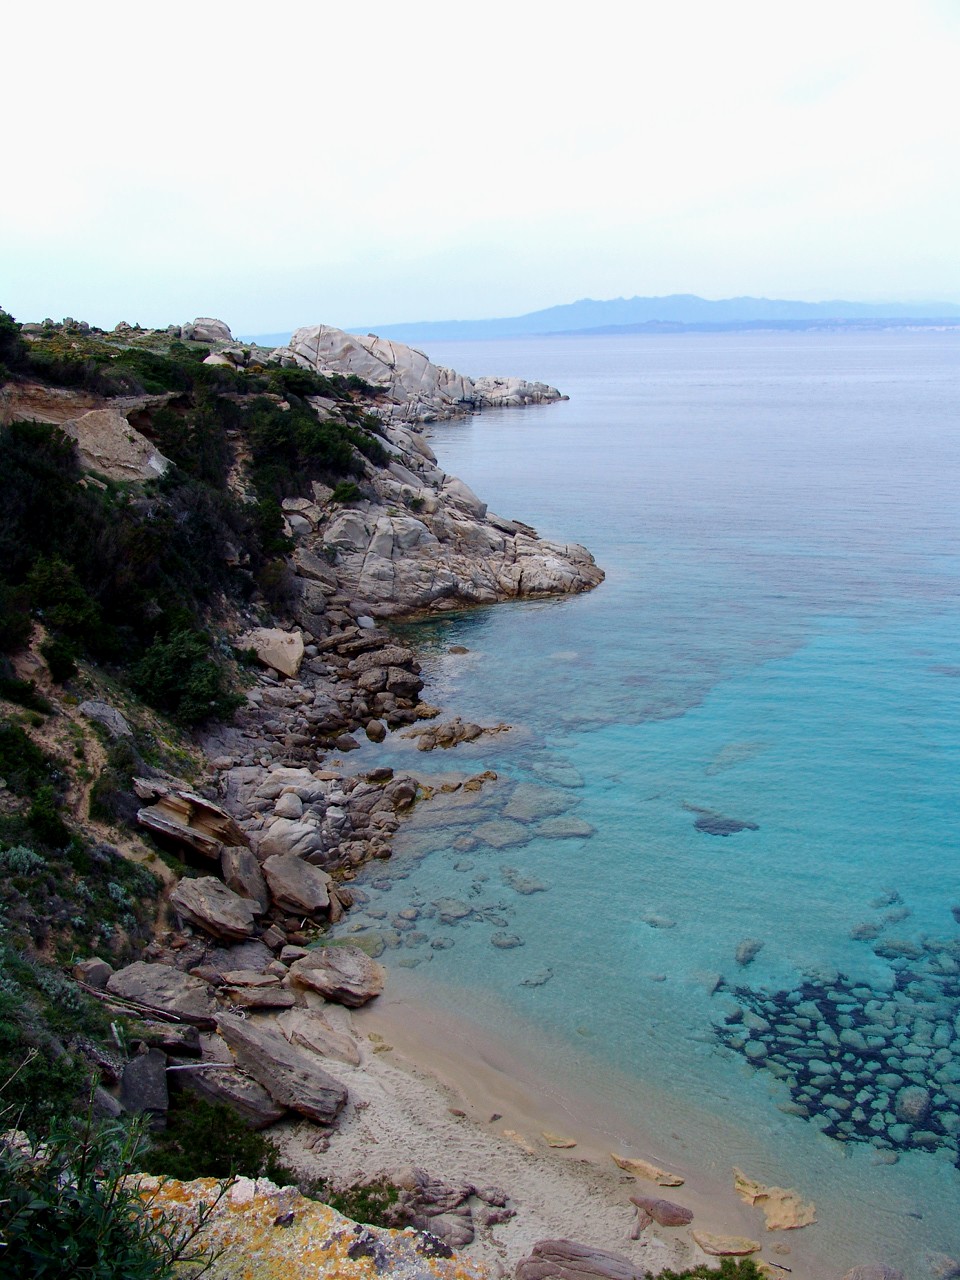 The Sardinian Sea, Northern coast, April 08